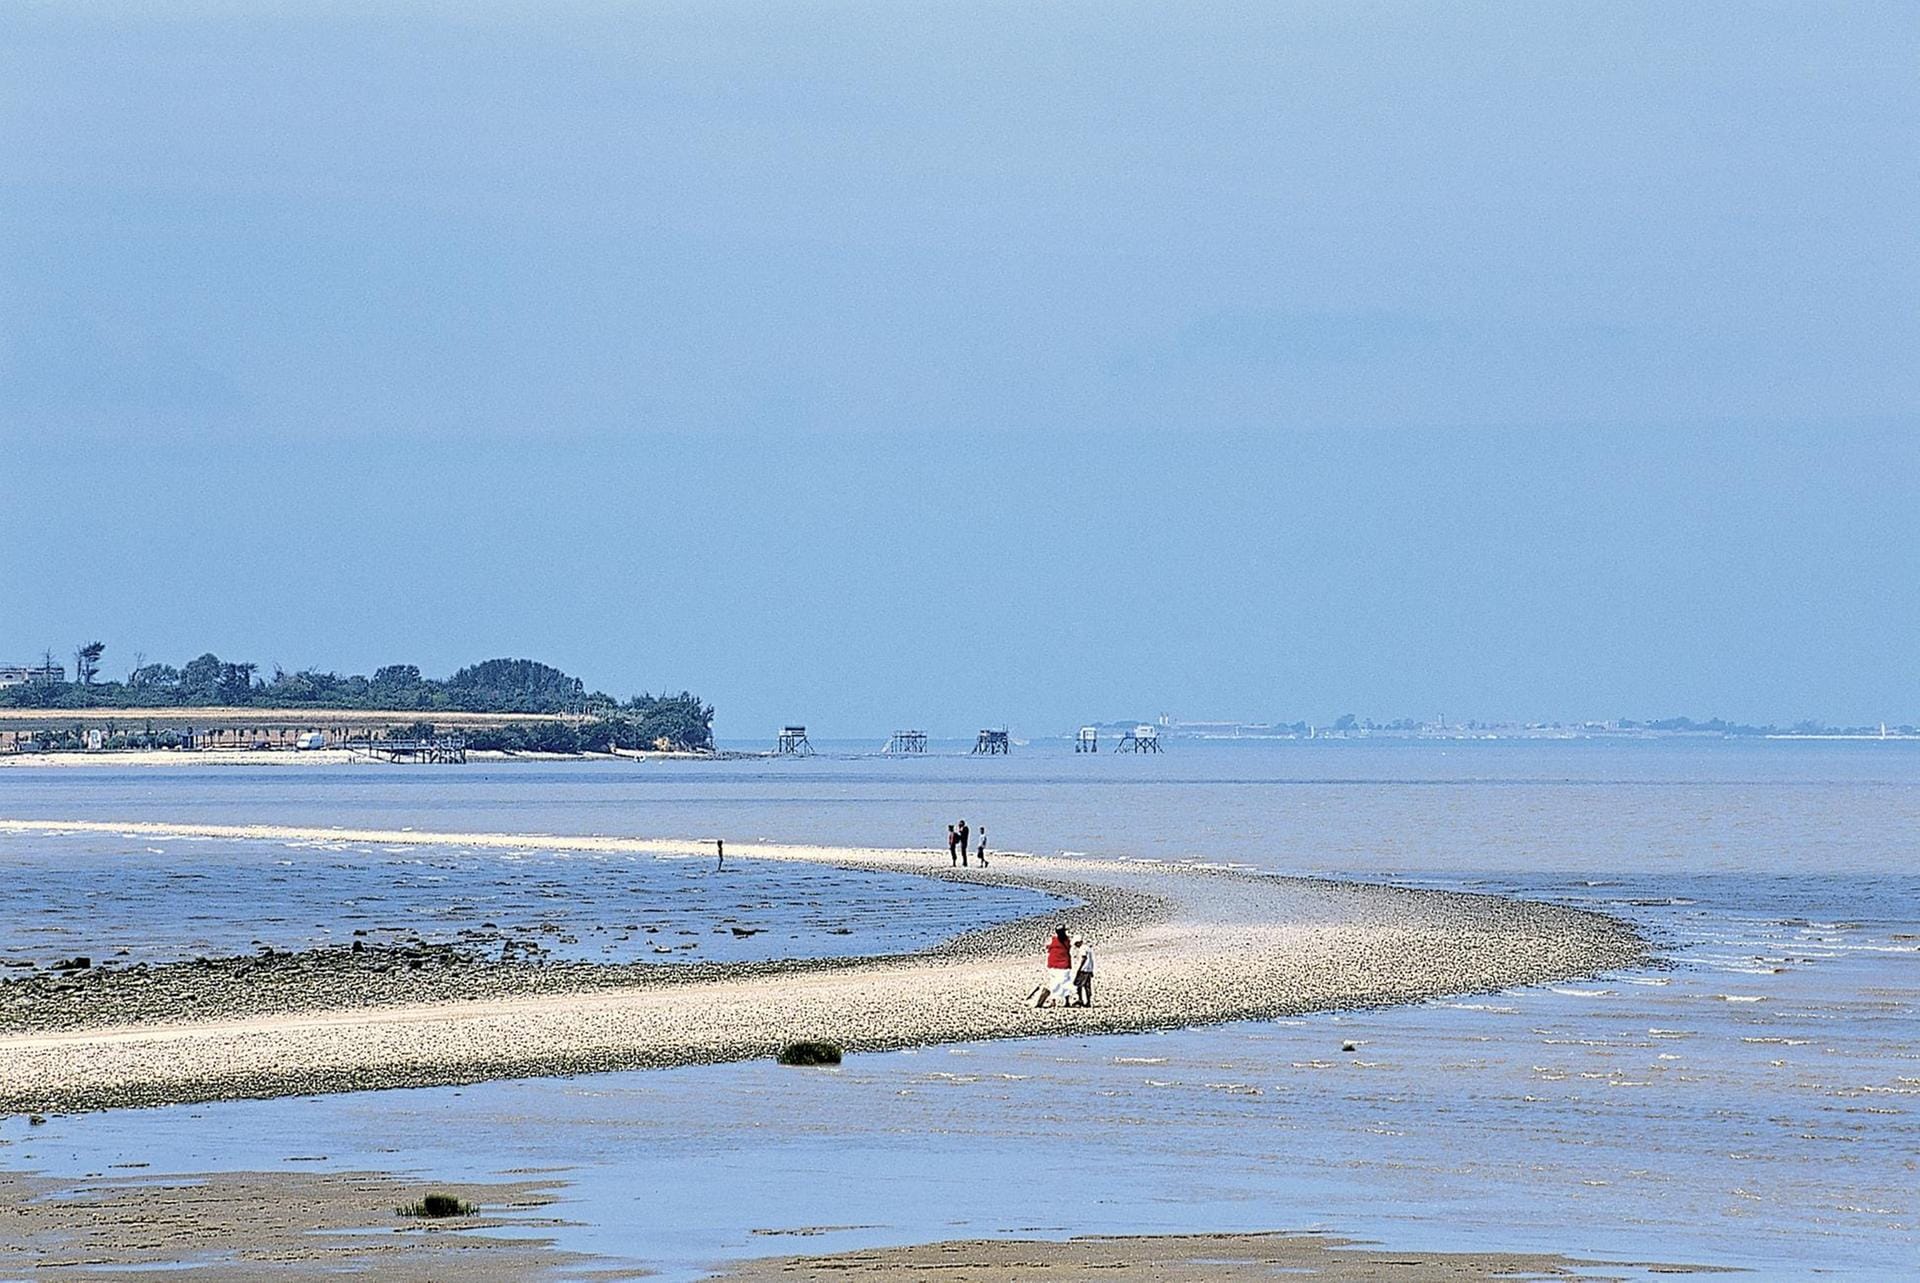 Ja, das gibt es wirklich: Eine Insel namens Madame. Als einen "Ort der Stille" preist das Fremdenverkehrsamt des französischen Départements Charente-Maritime das nur 0,78 Quadratkilometer große Eiland vor der Atlantikküste bei La Rochelle an.